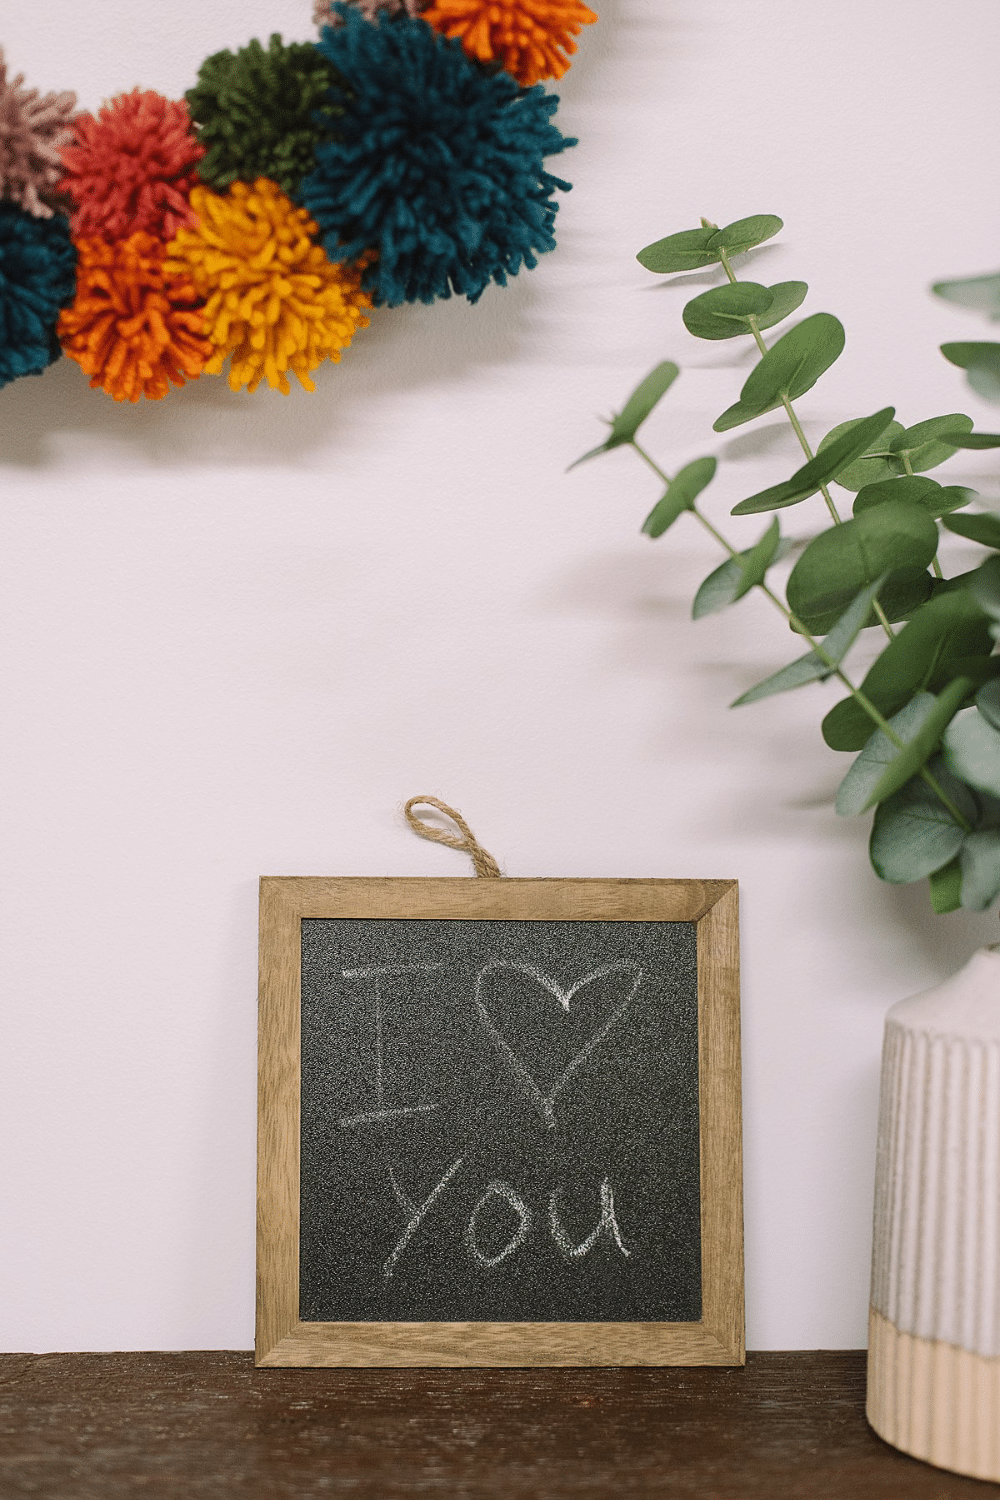 DIY Mini Wooden Chalkboards